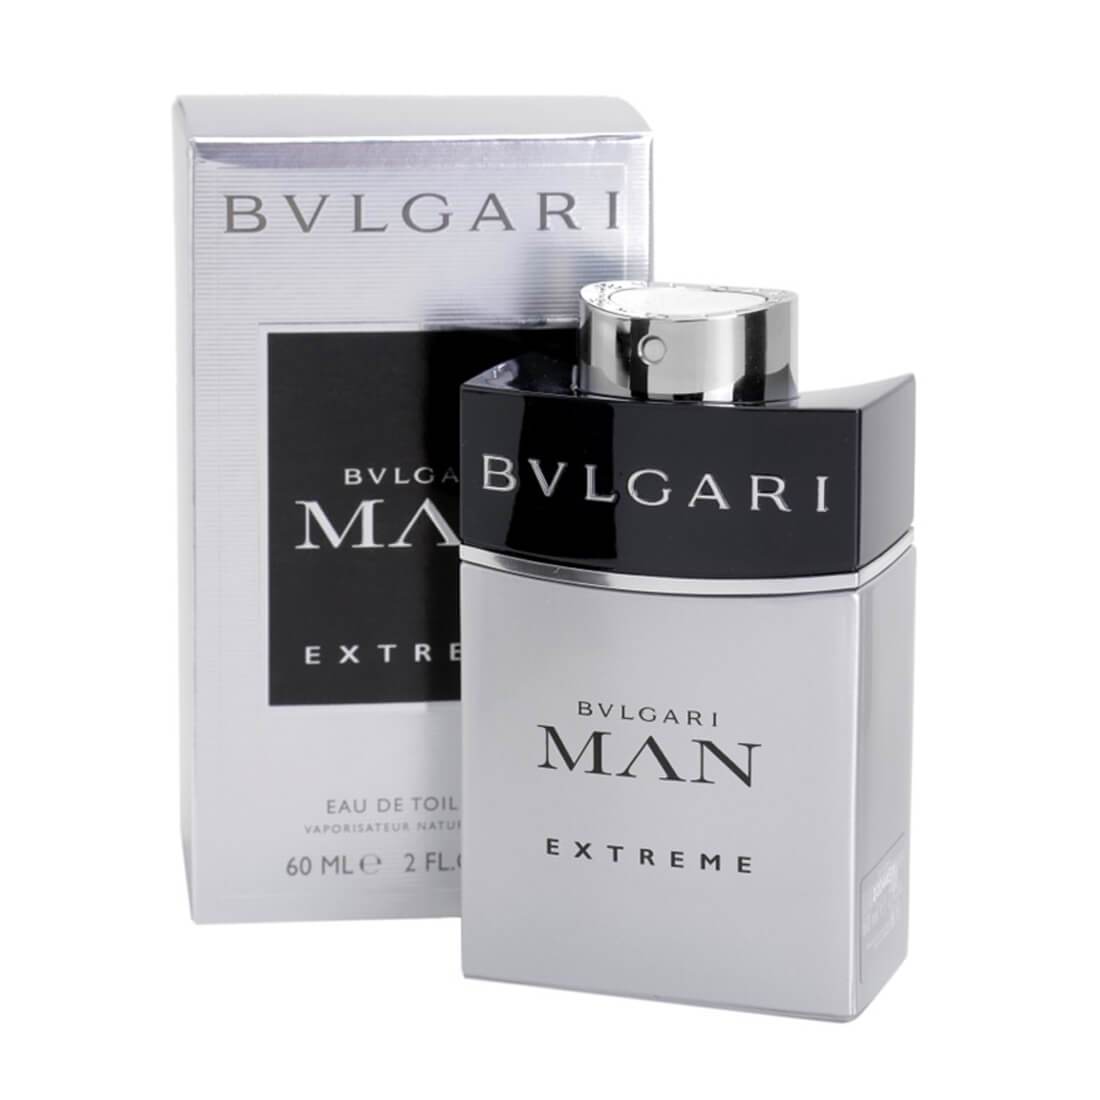 bvlgari man or man extreme